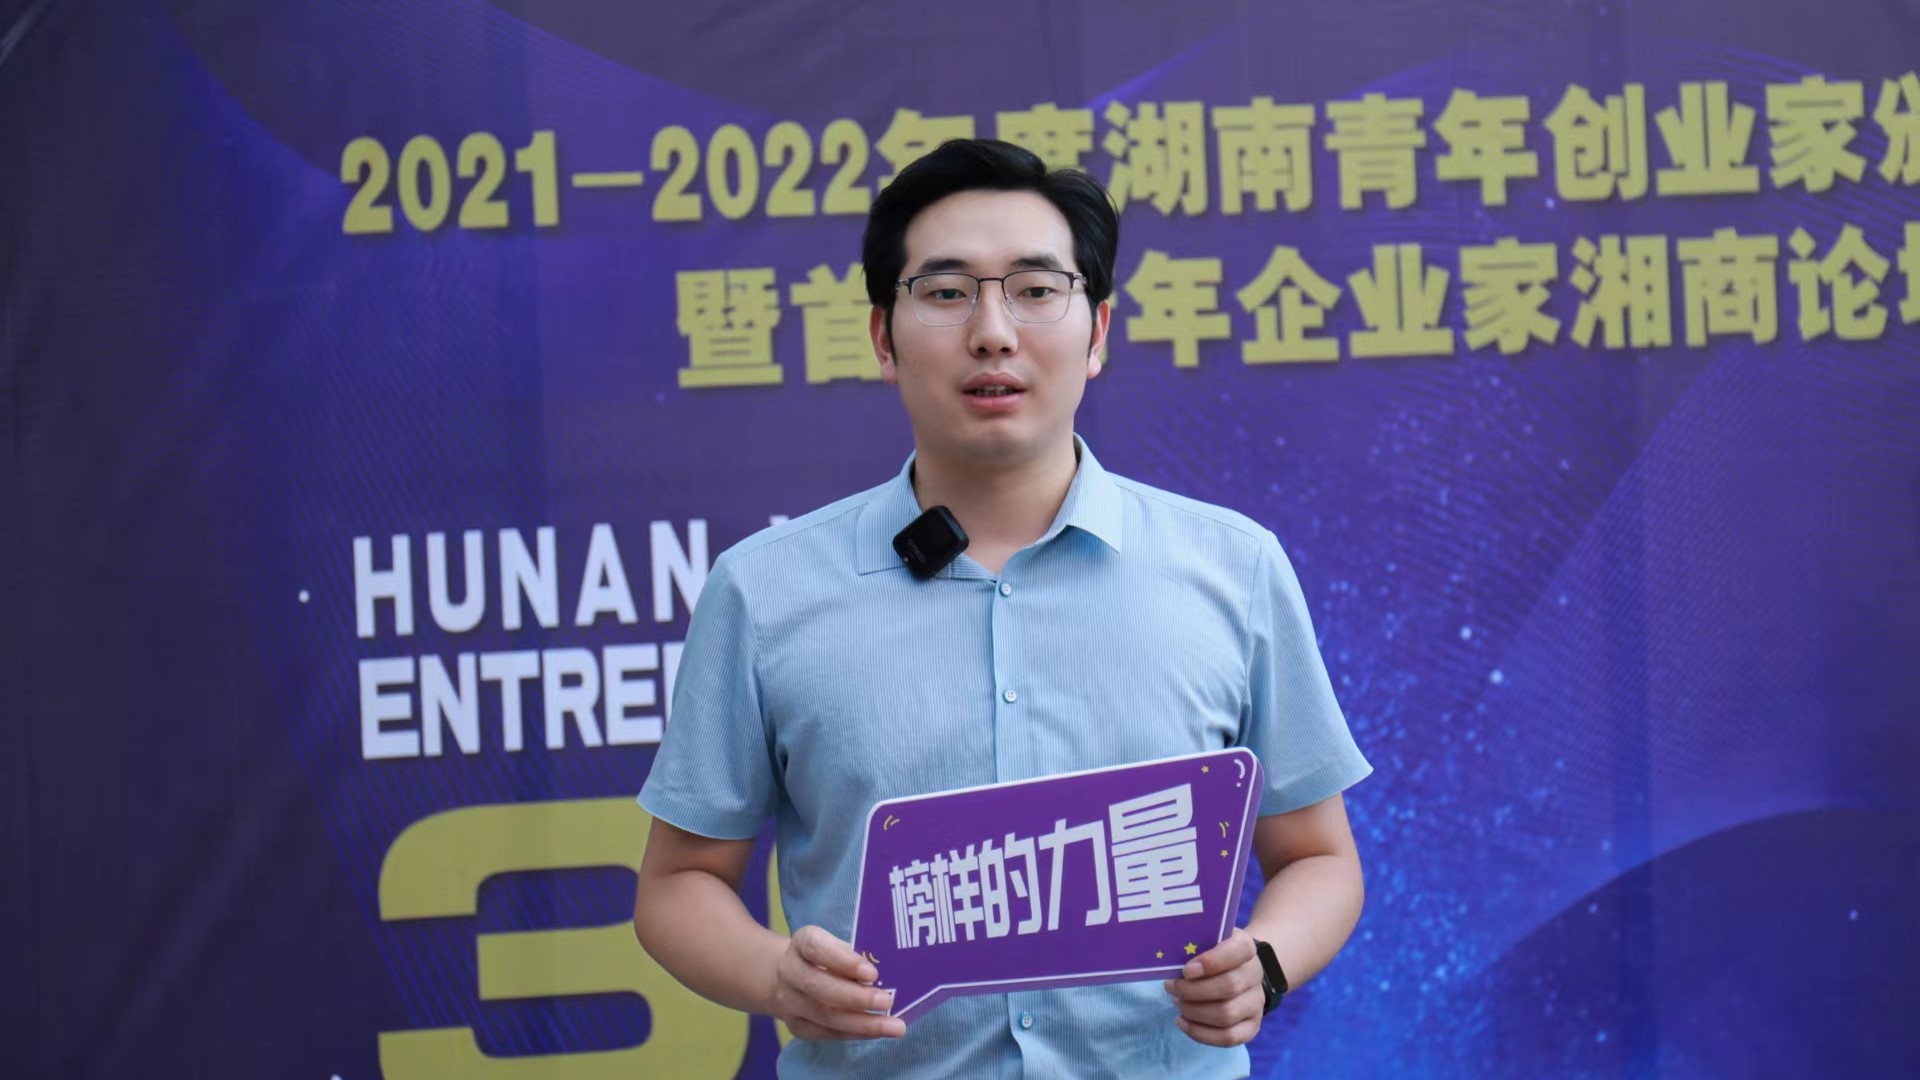 德尔斐付盟被授予“2021-2022年度湖南青年创业家”奖